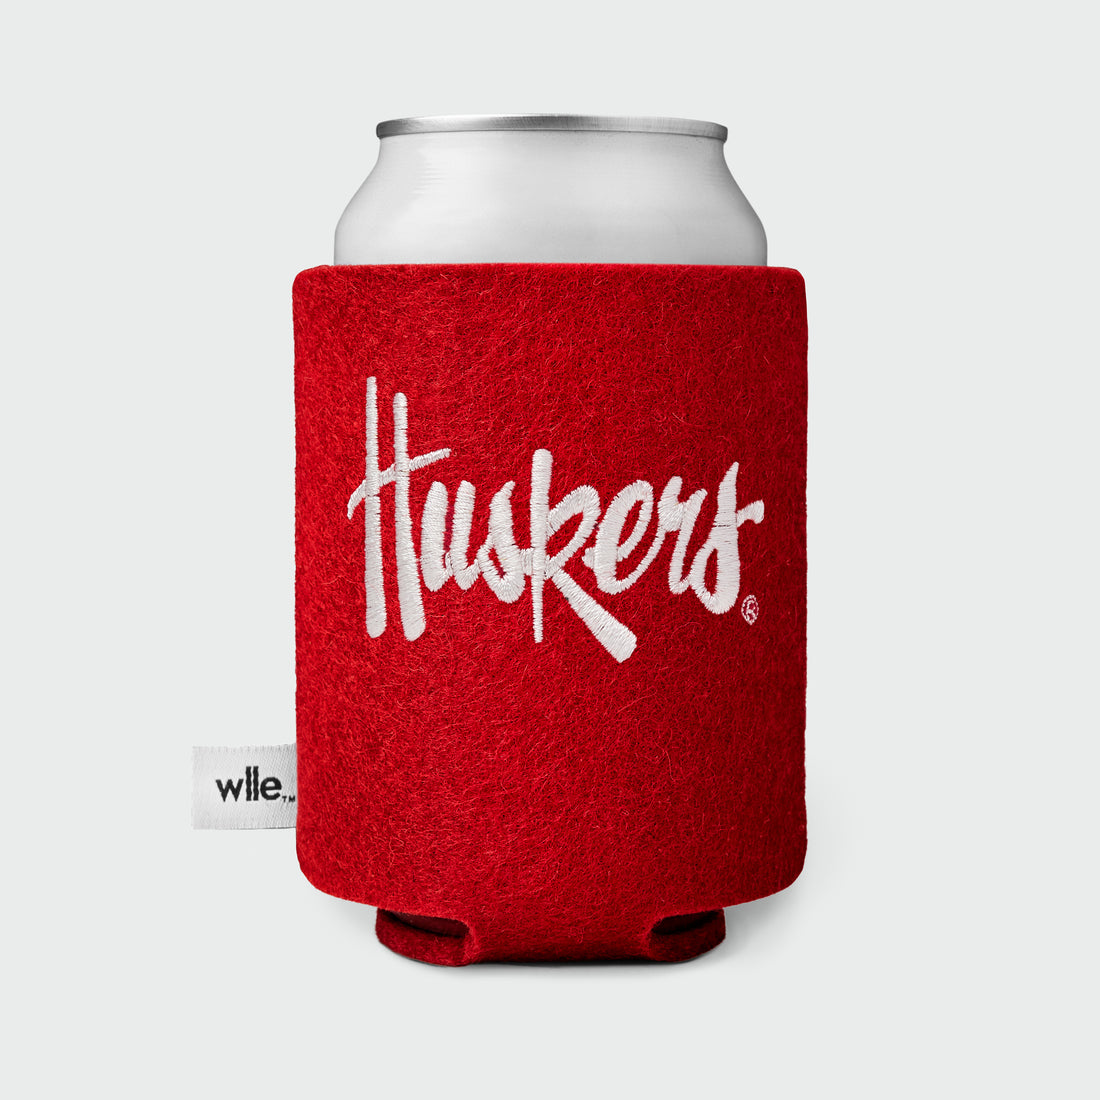 University of Nebraska wlle™ Drink Sweater - Huskers Script - Red